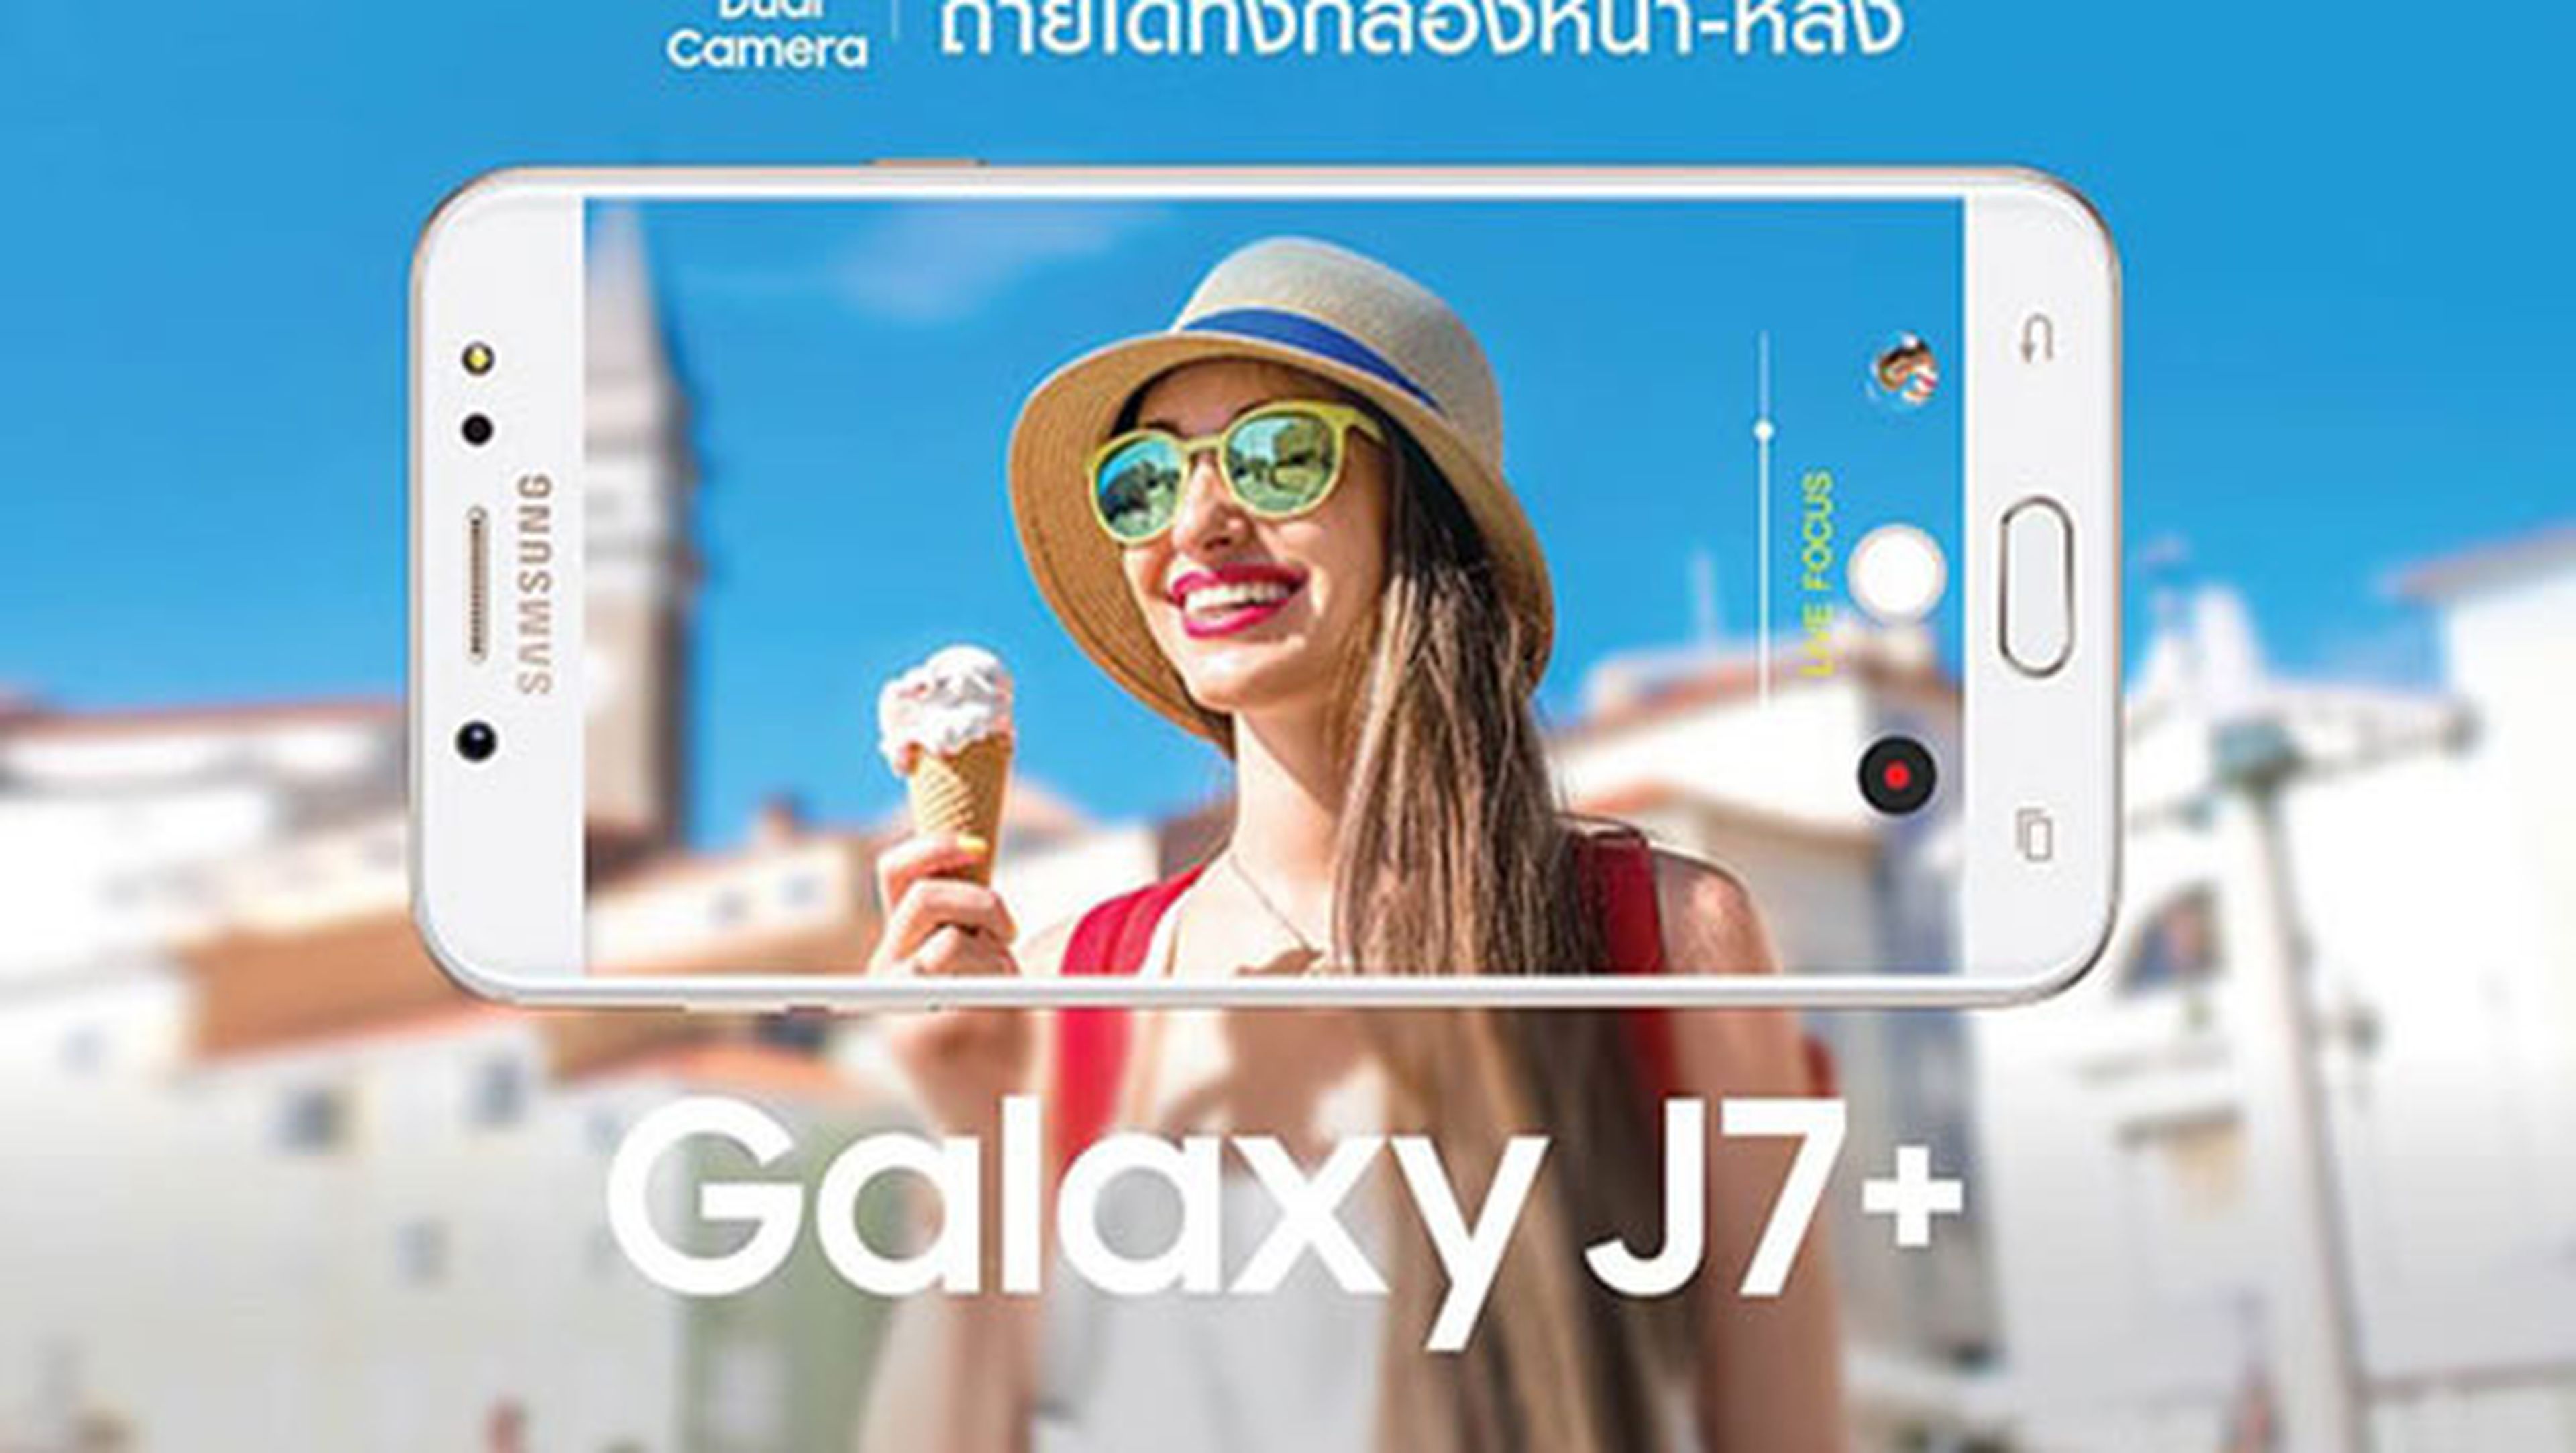 Samsung Galaxy J7+, la gama media también se merece doble cámara